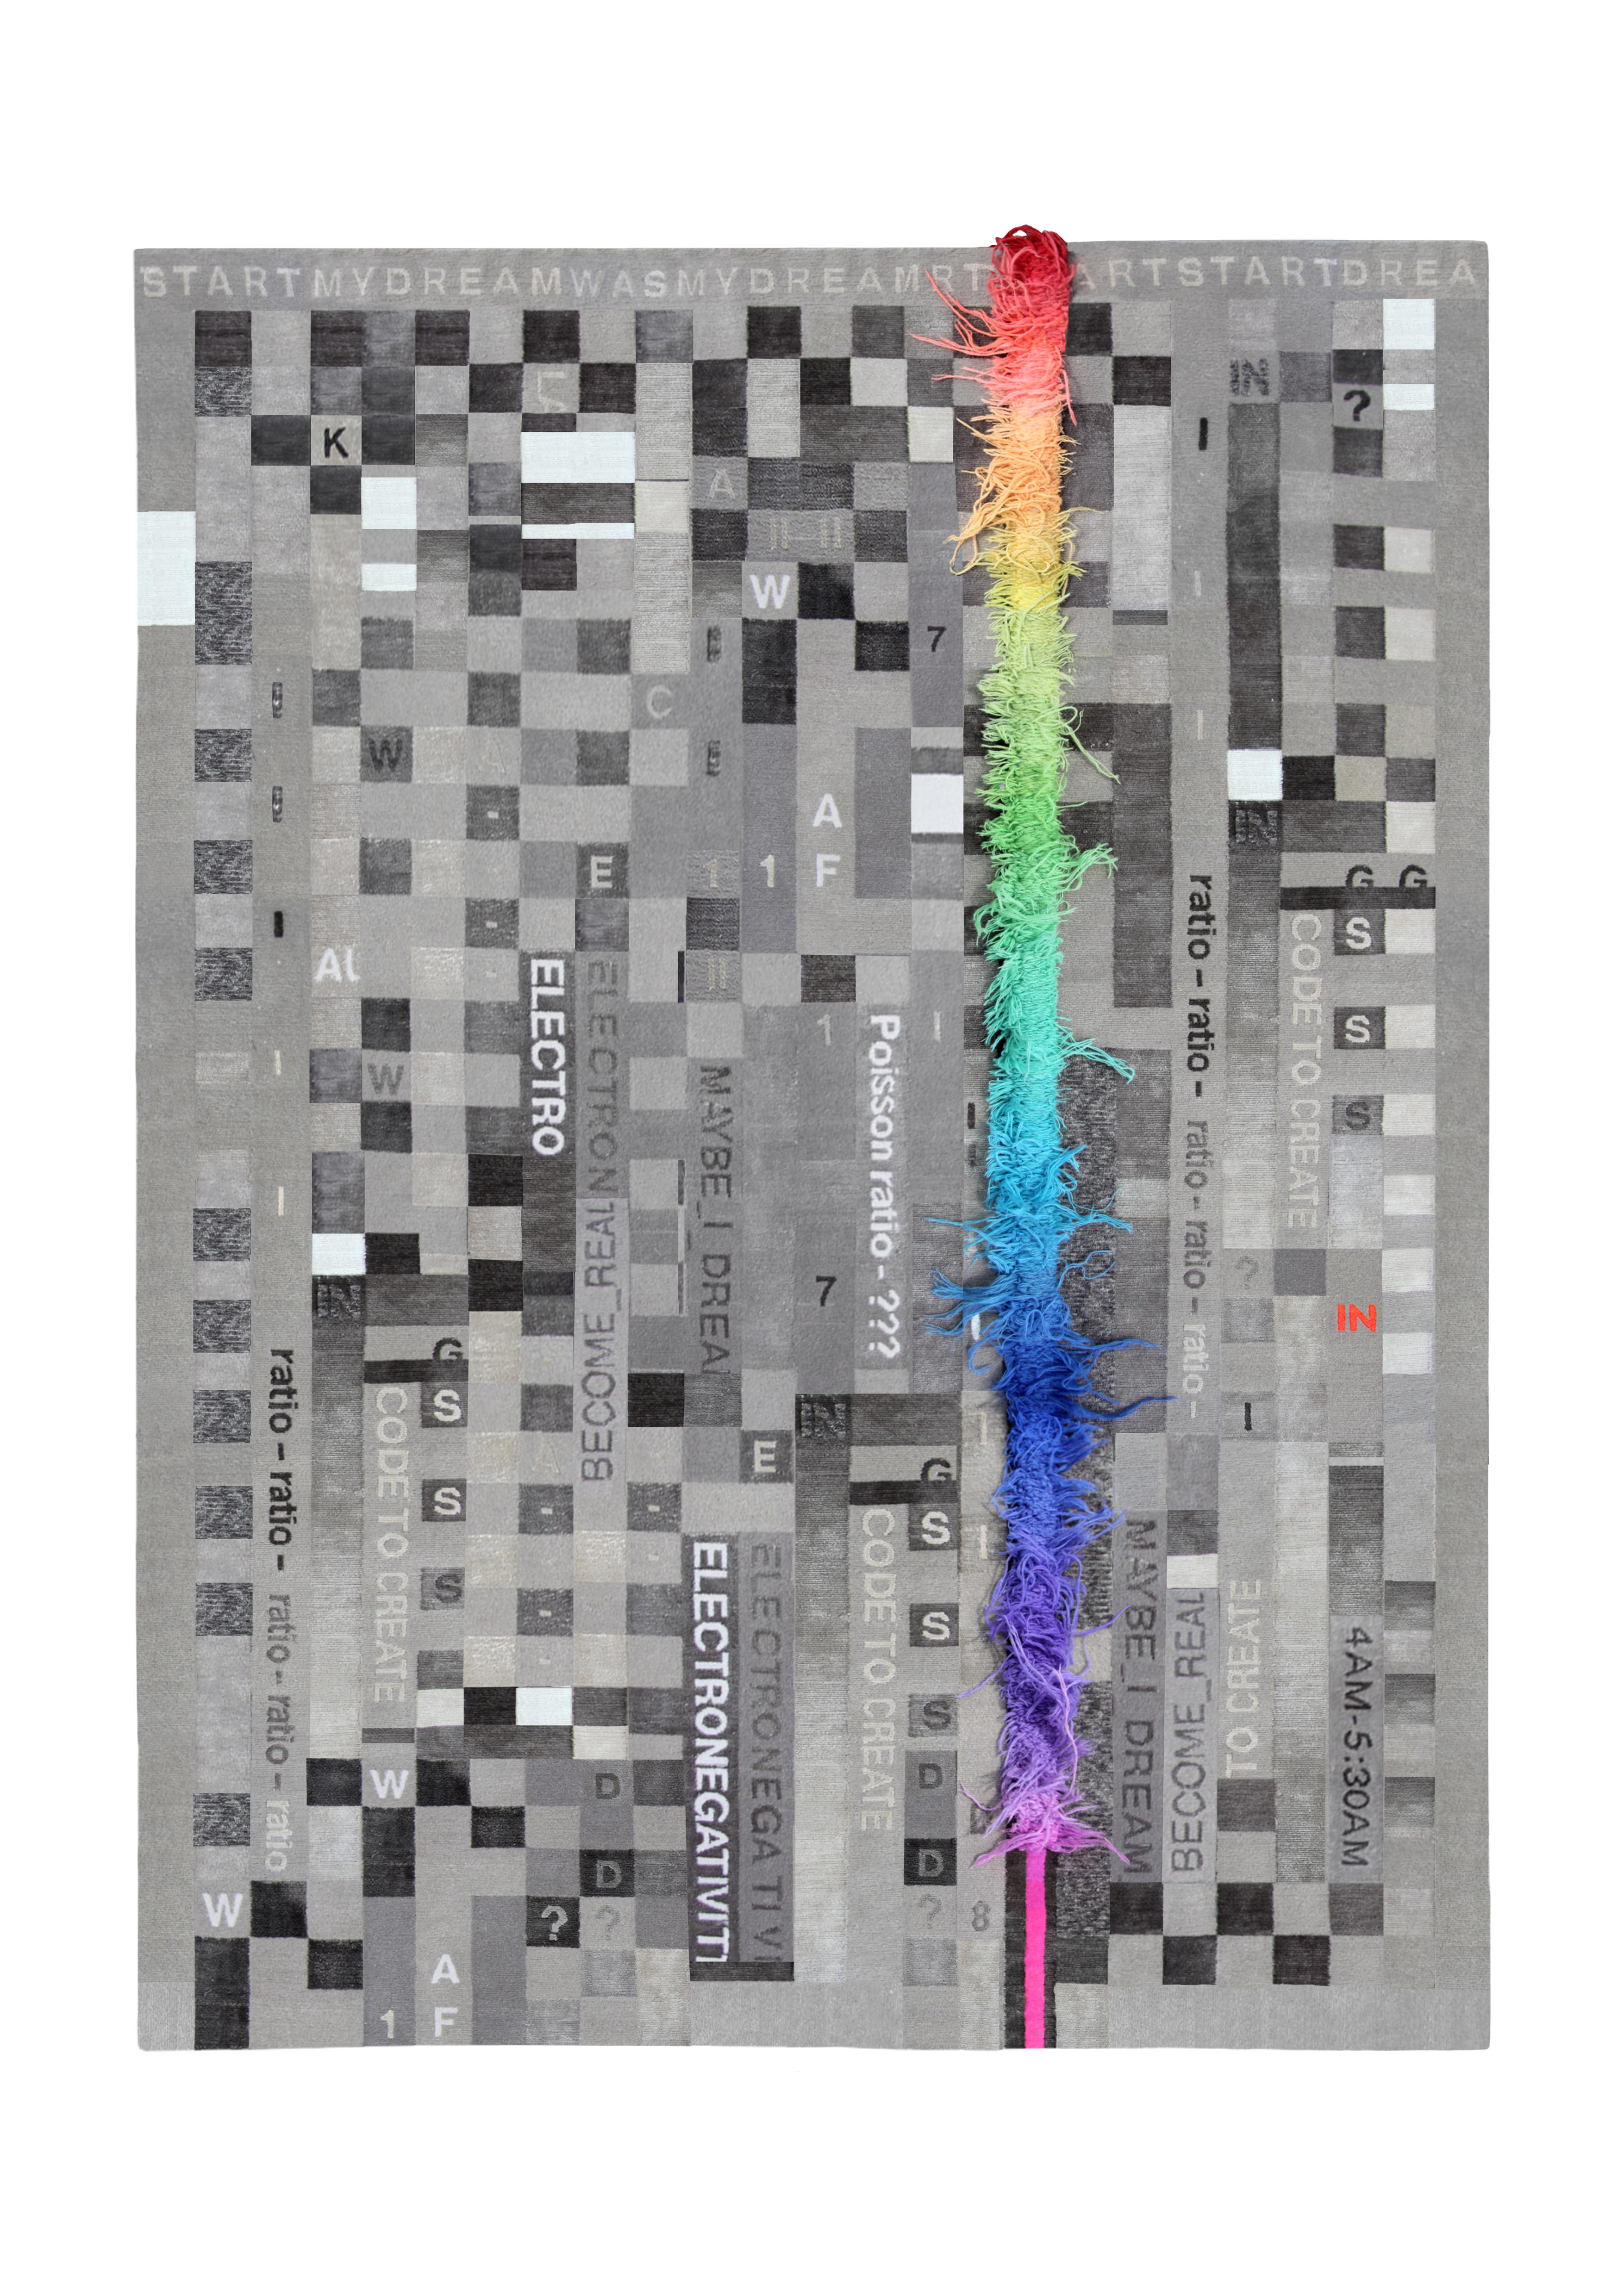 00.01 handgeknüpfter teppich von Laroque Studio
Handgeknüpft in Nepal
Abmessungen: 250 x 175cm
MATERIALIEN: Chinesische Seide/Wolle
Qualität: 150 Knoten / Quadratzoll

Es wäre fast unmöglich, nur eine Idee zu nennen, die die Collection 00 inspiriert